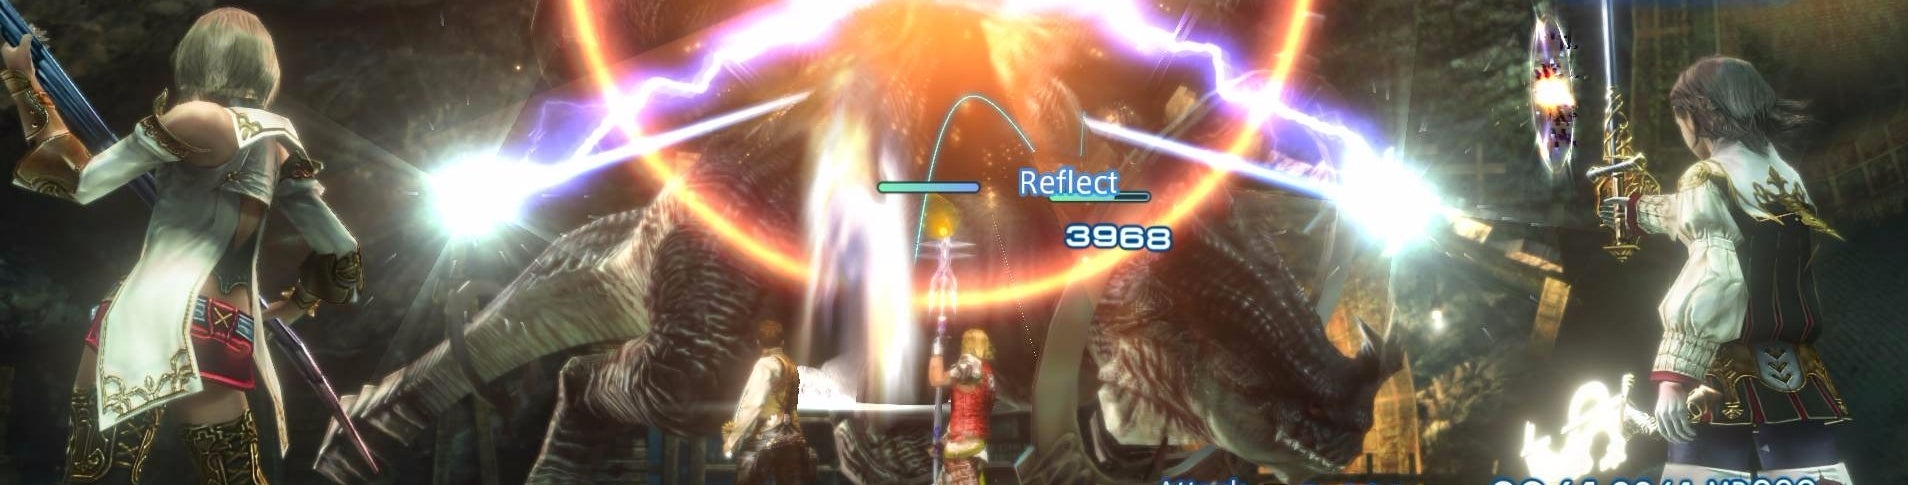 Immagine di Final Fantasy 12 su PC introduce i 60fps, ma i requisiti di sistema sono alti - analisi comparativa